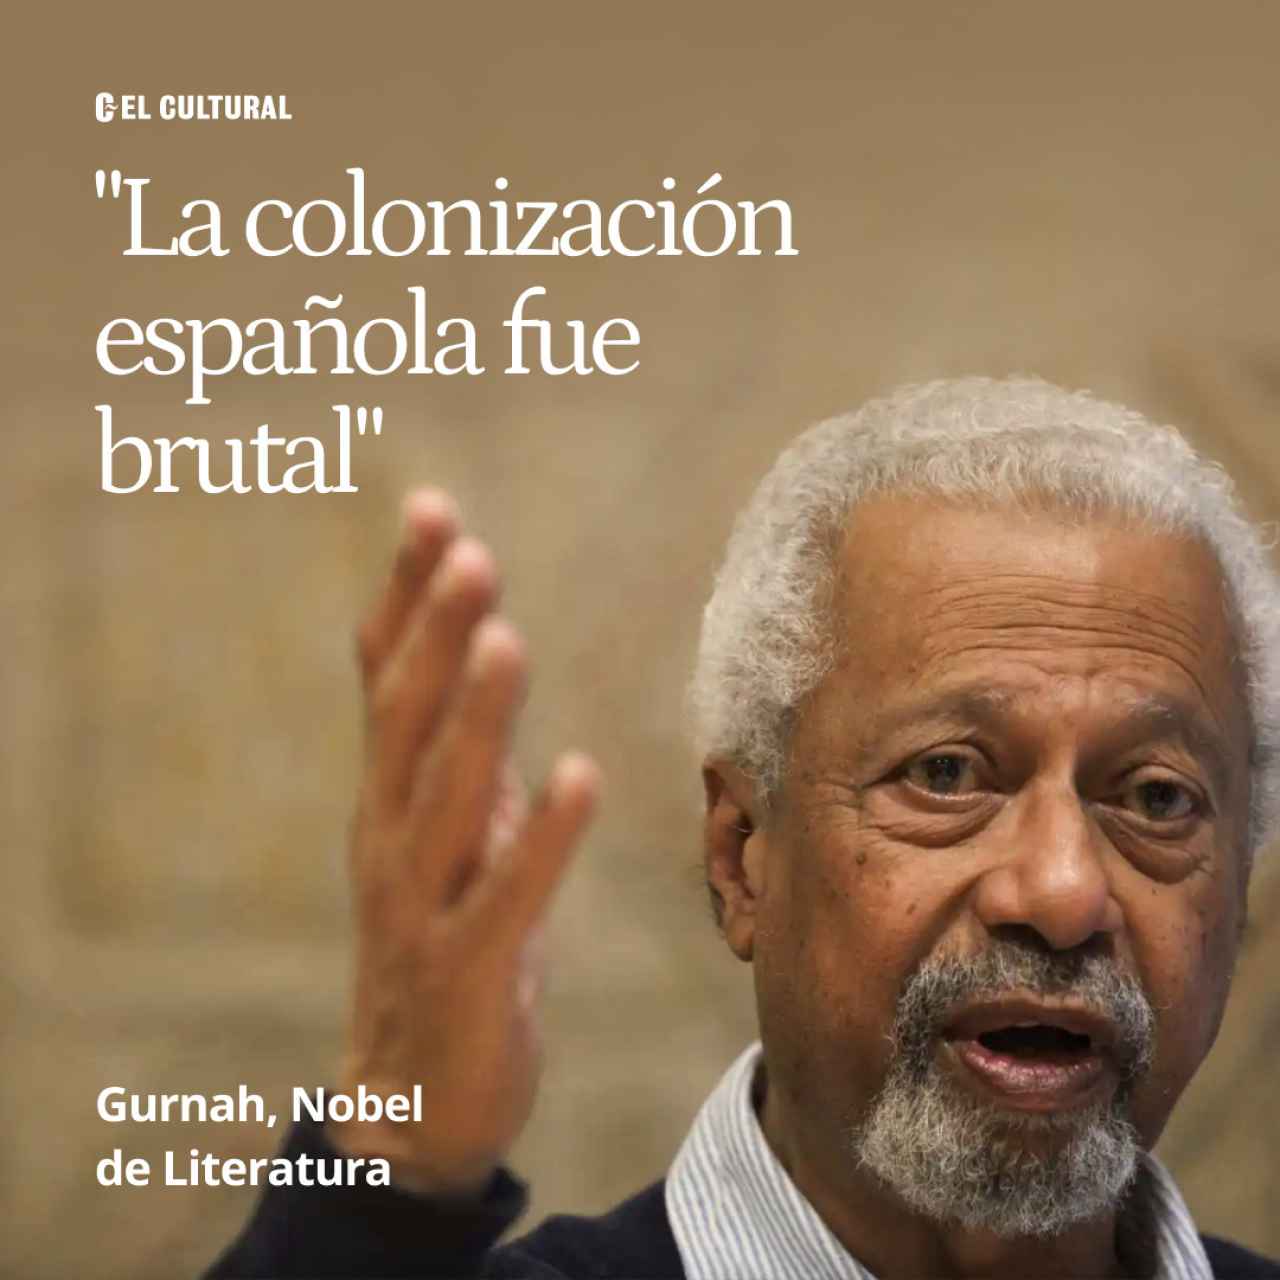 Gurnah, Nobel de Literatura: "La colonización española fue brutal y aquí, aunque no lo crean, se han beneficiado"